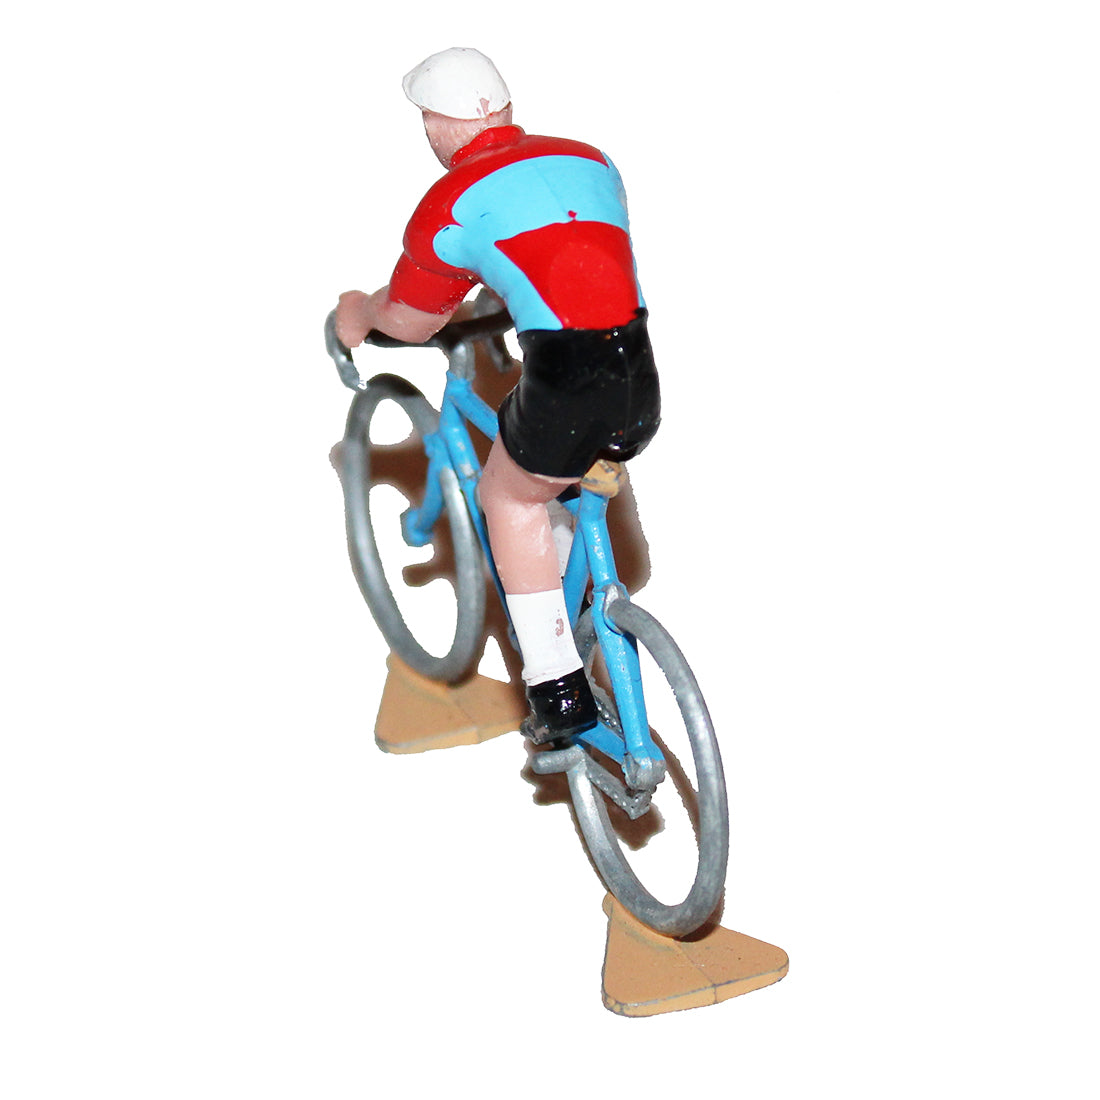 Increvable PRO : Figurine cycliste maillot à pois Tour de France années 50  - increvable.com 